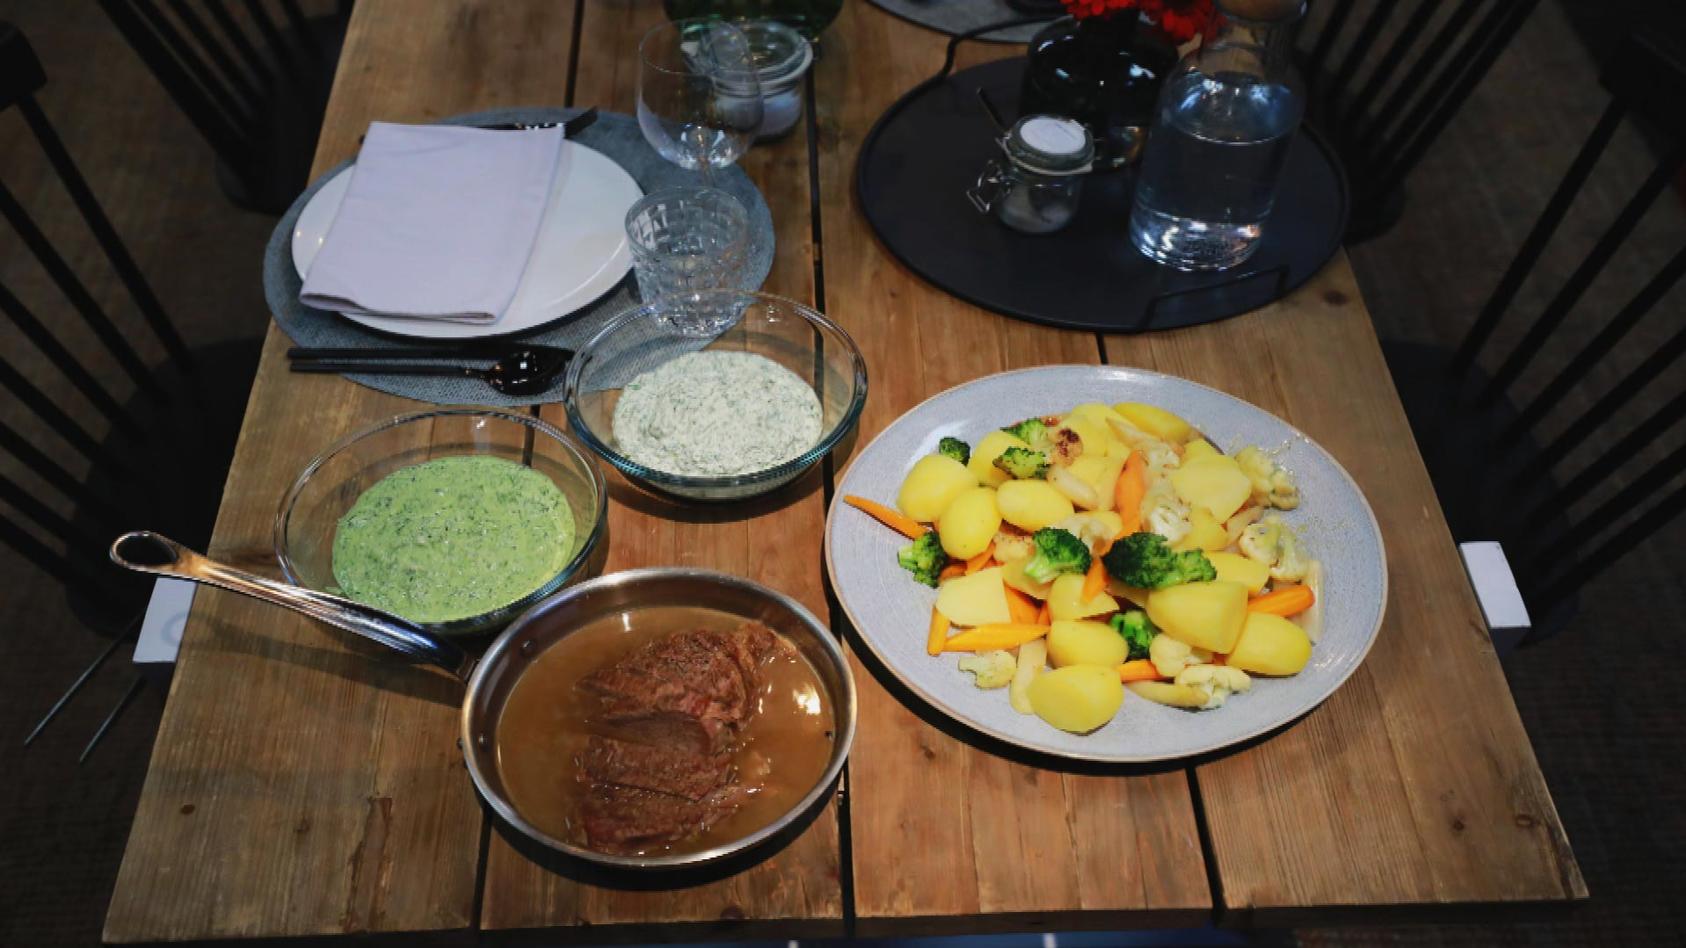 Tafelspitz mit jungem Gemüse und grüner Sauce: Hauptgericht von Andrea Schirmaier-Huber und Ronny Loll